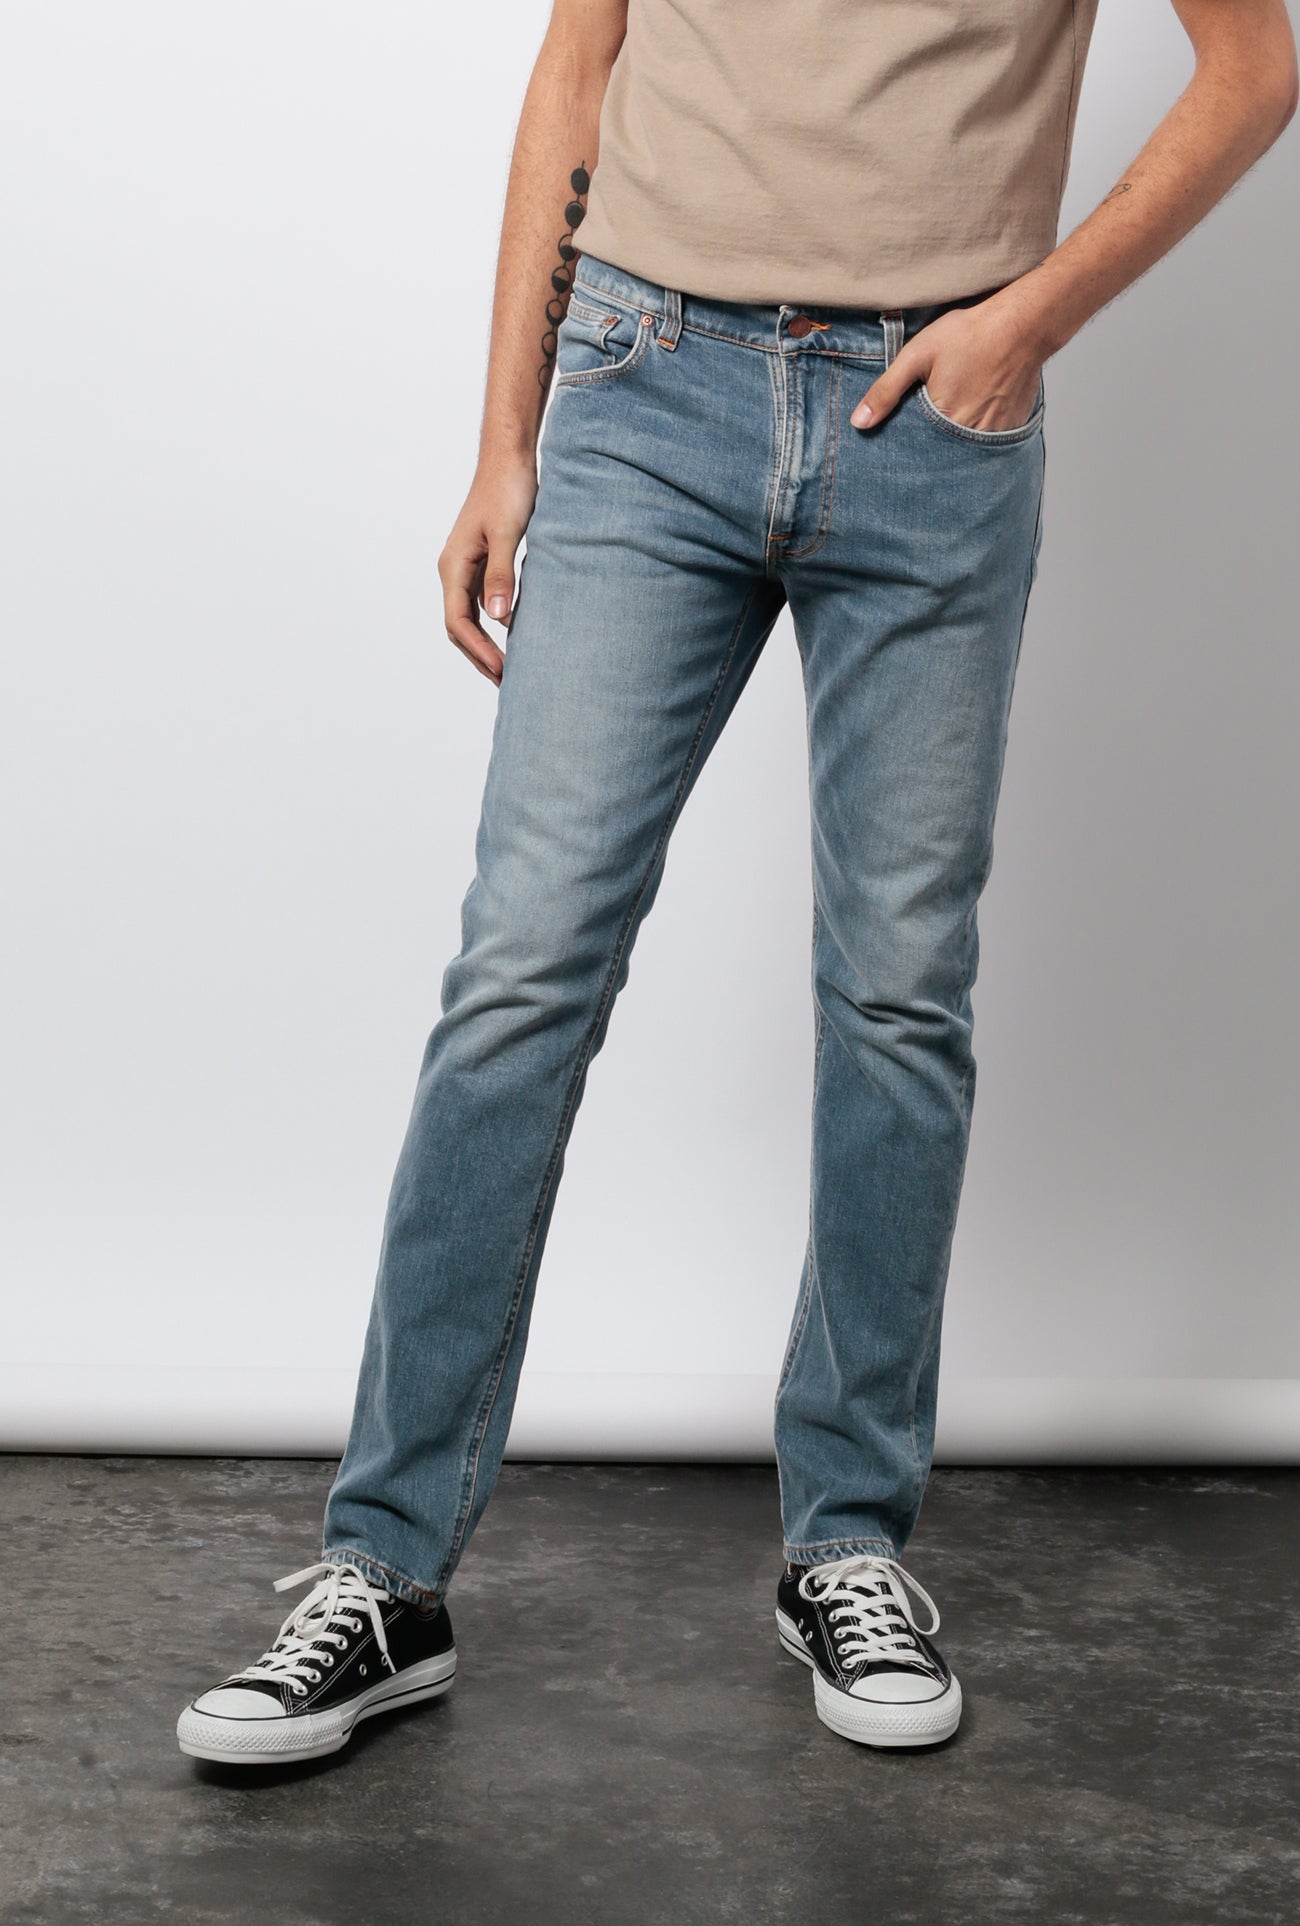 simply vera wang jeans